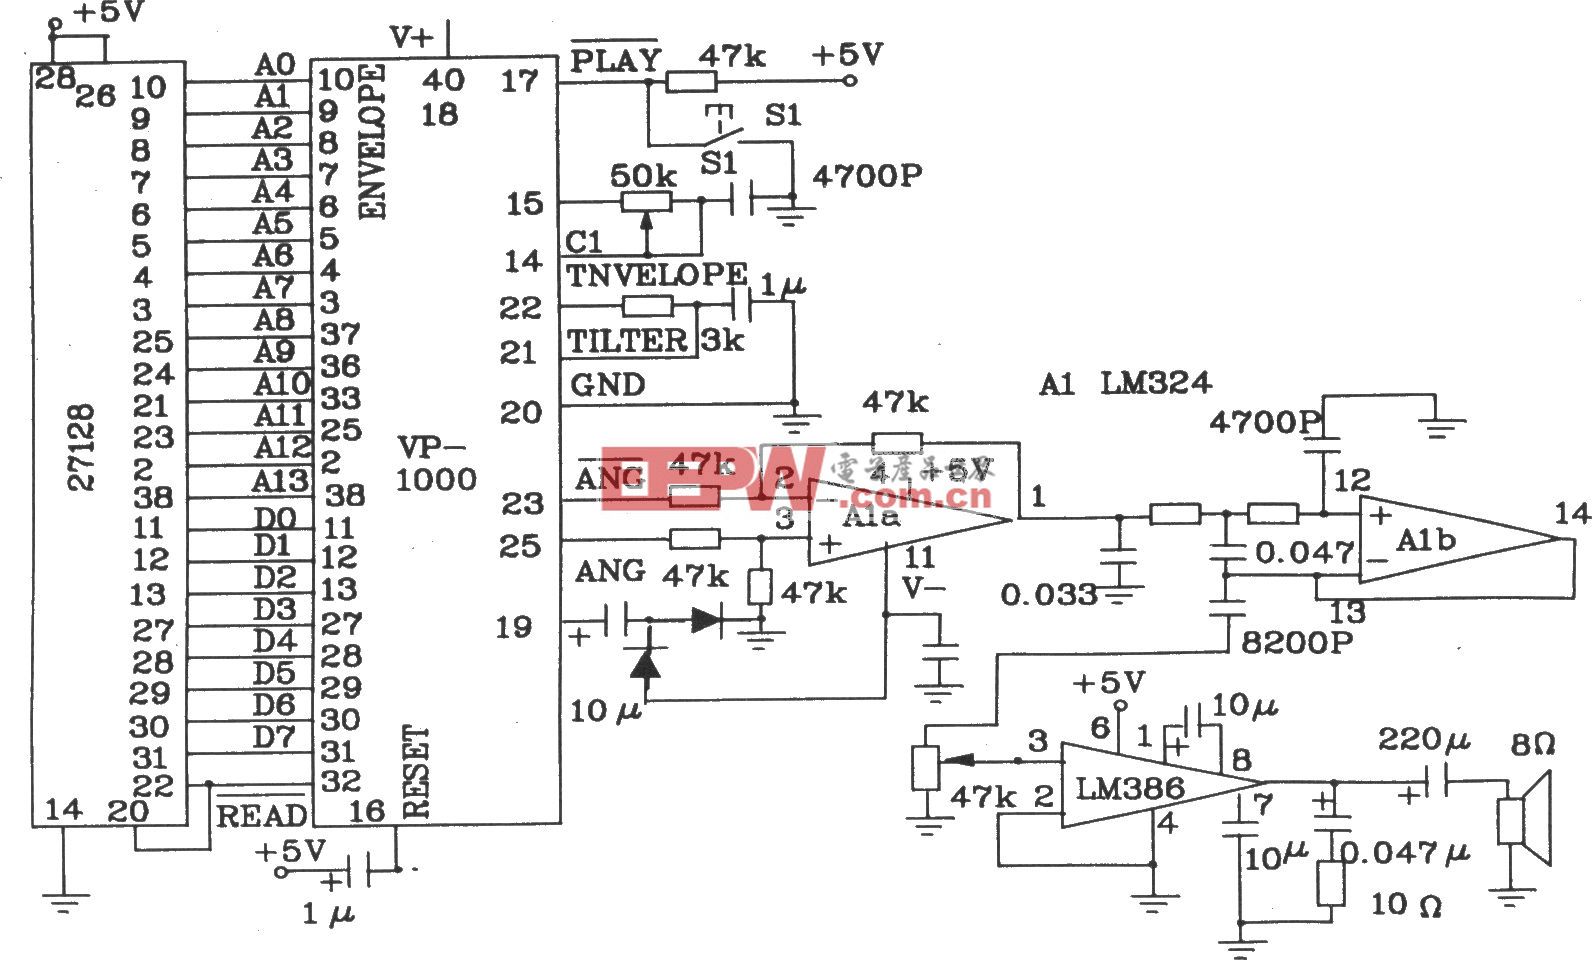 語音合成芯片VP-1000和EEPROM相連只作放音的電路圖